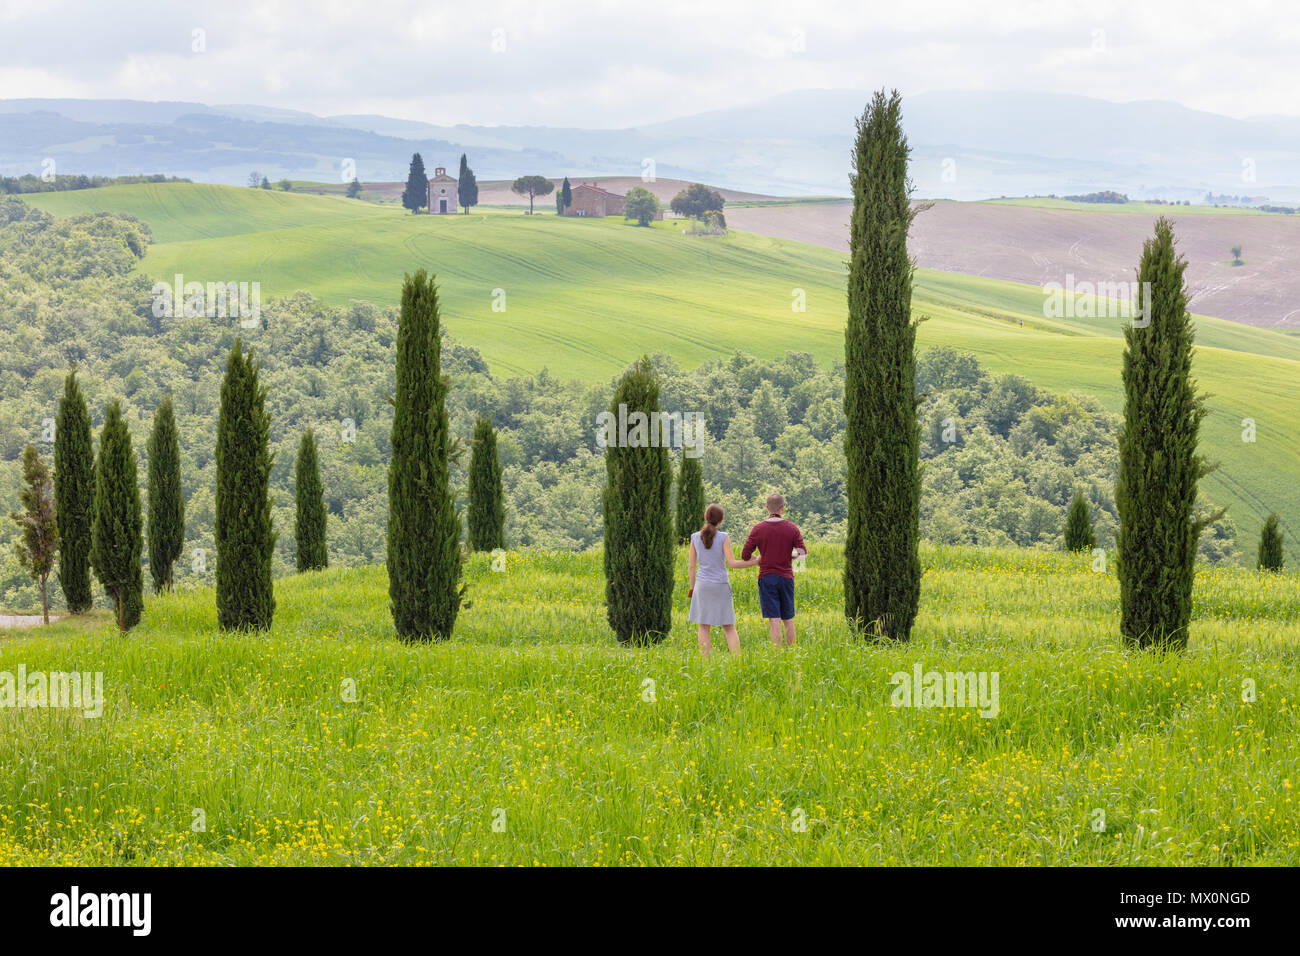 San Quirico, Toscana, Italia; 10 de mayo de 2018; adulto joven pareja de turistas parado entre cipreses. El hombre es tomar una fotografía de la capilla Vitaleta Foto de stock